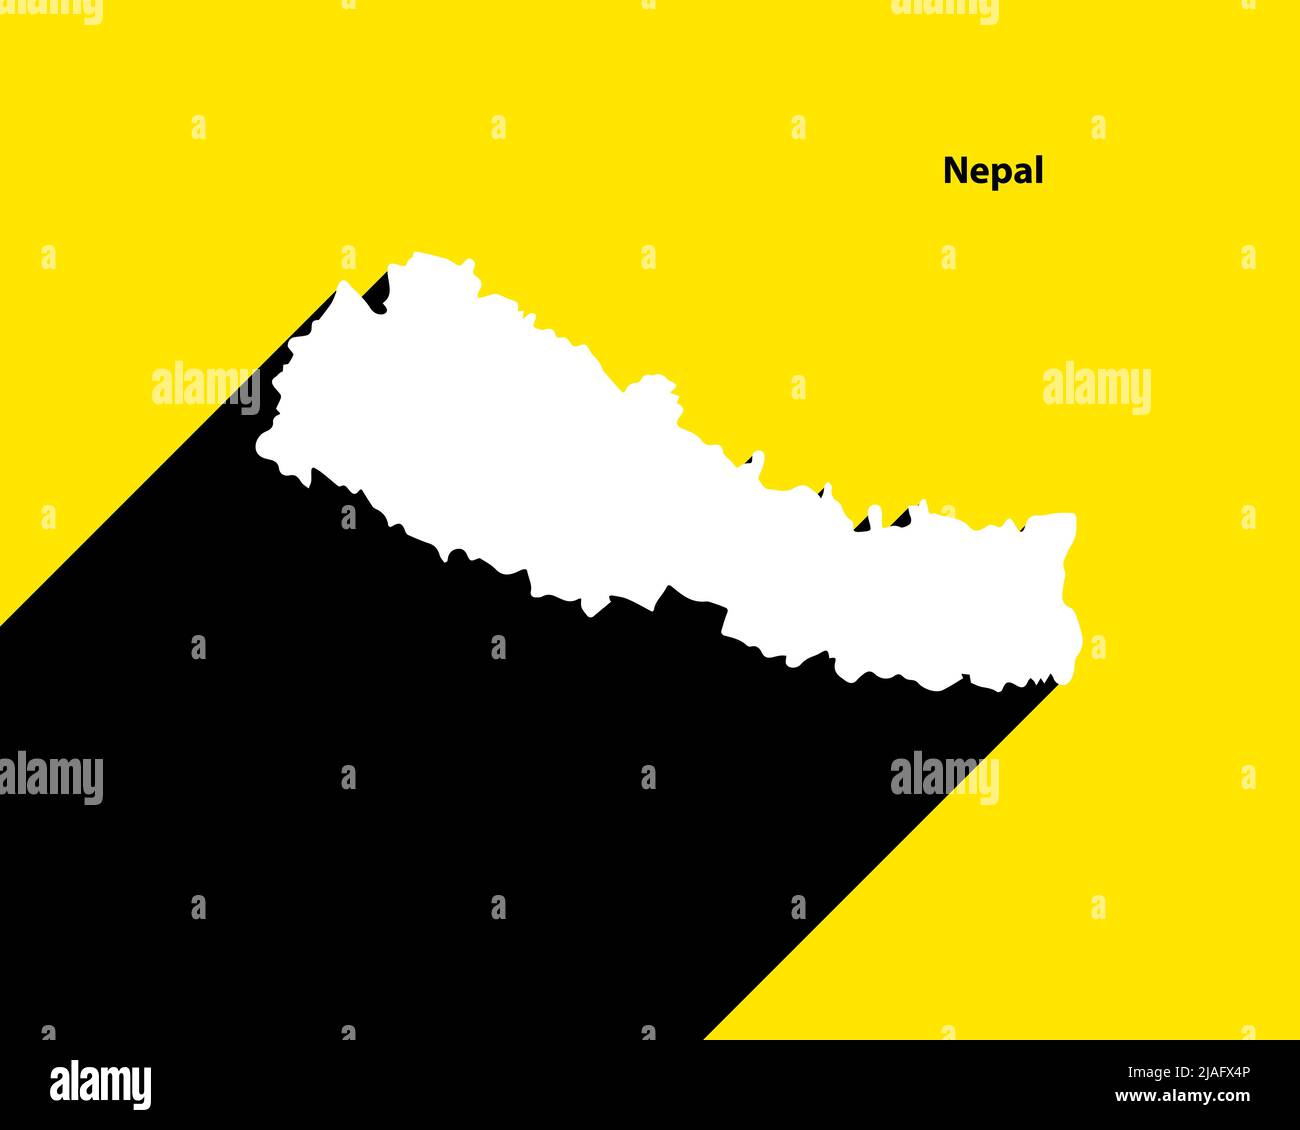 Mappa del Nepal su poster retrò con lunga ombra. Segno vintage facile da modificare, manipolare, ridimensionare o colorare. Illustrazione Vettoriale